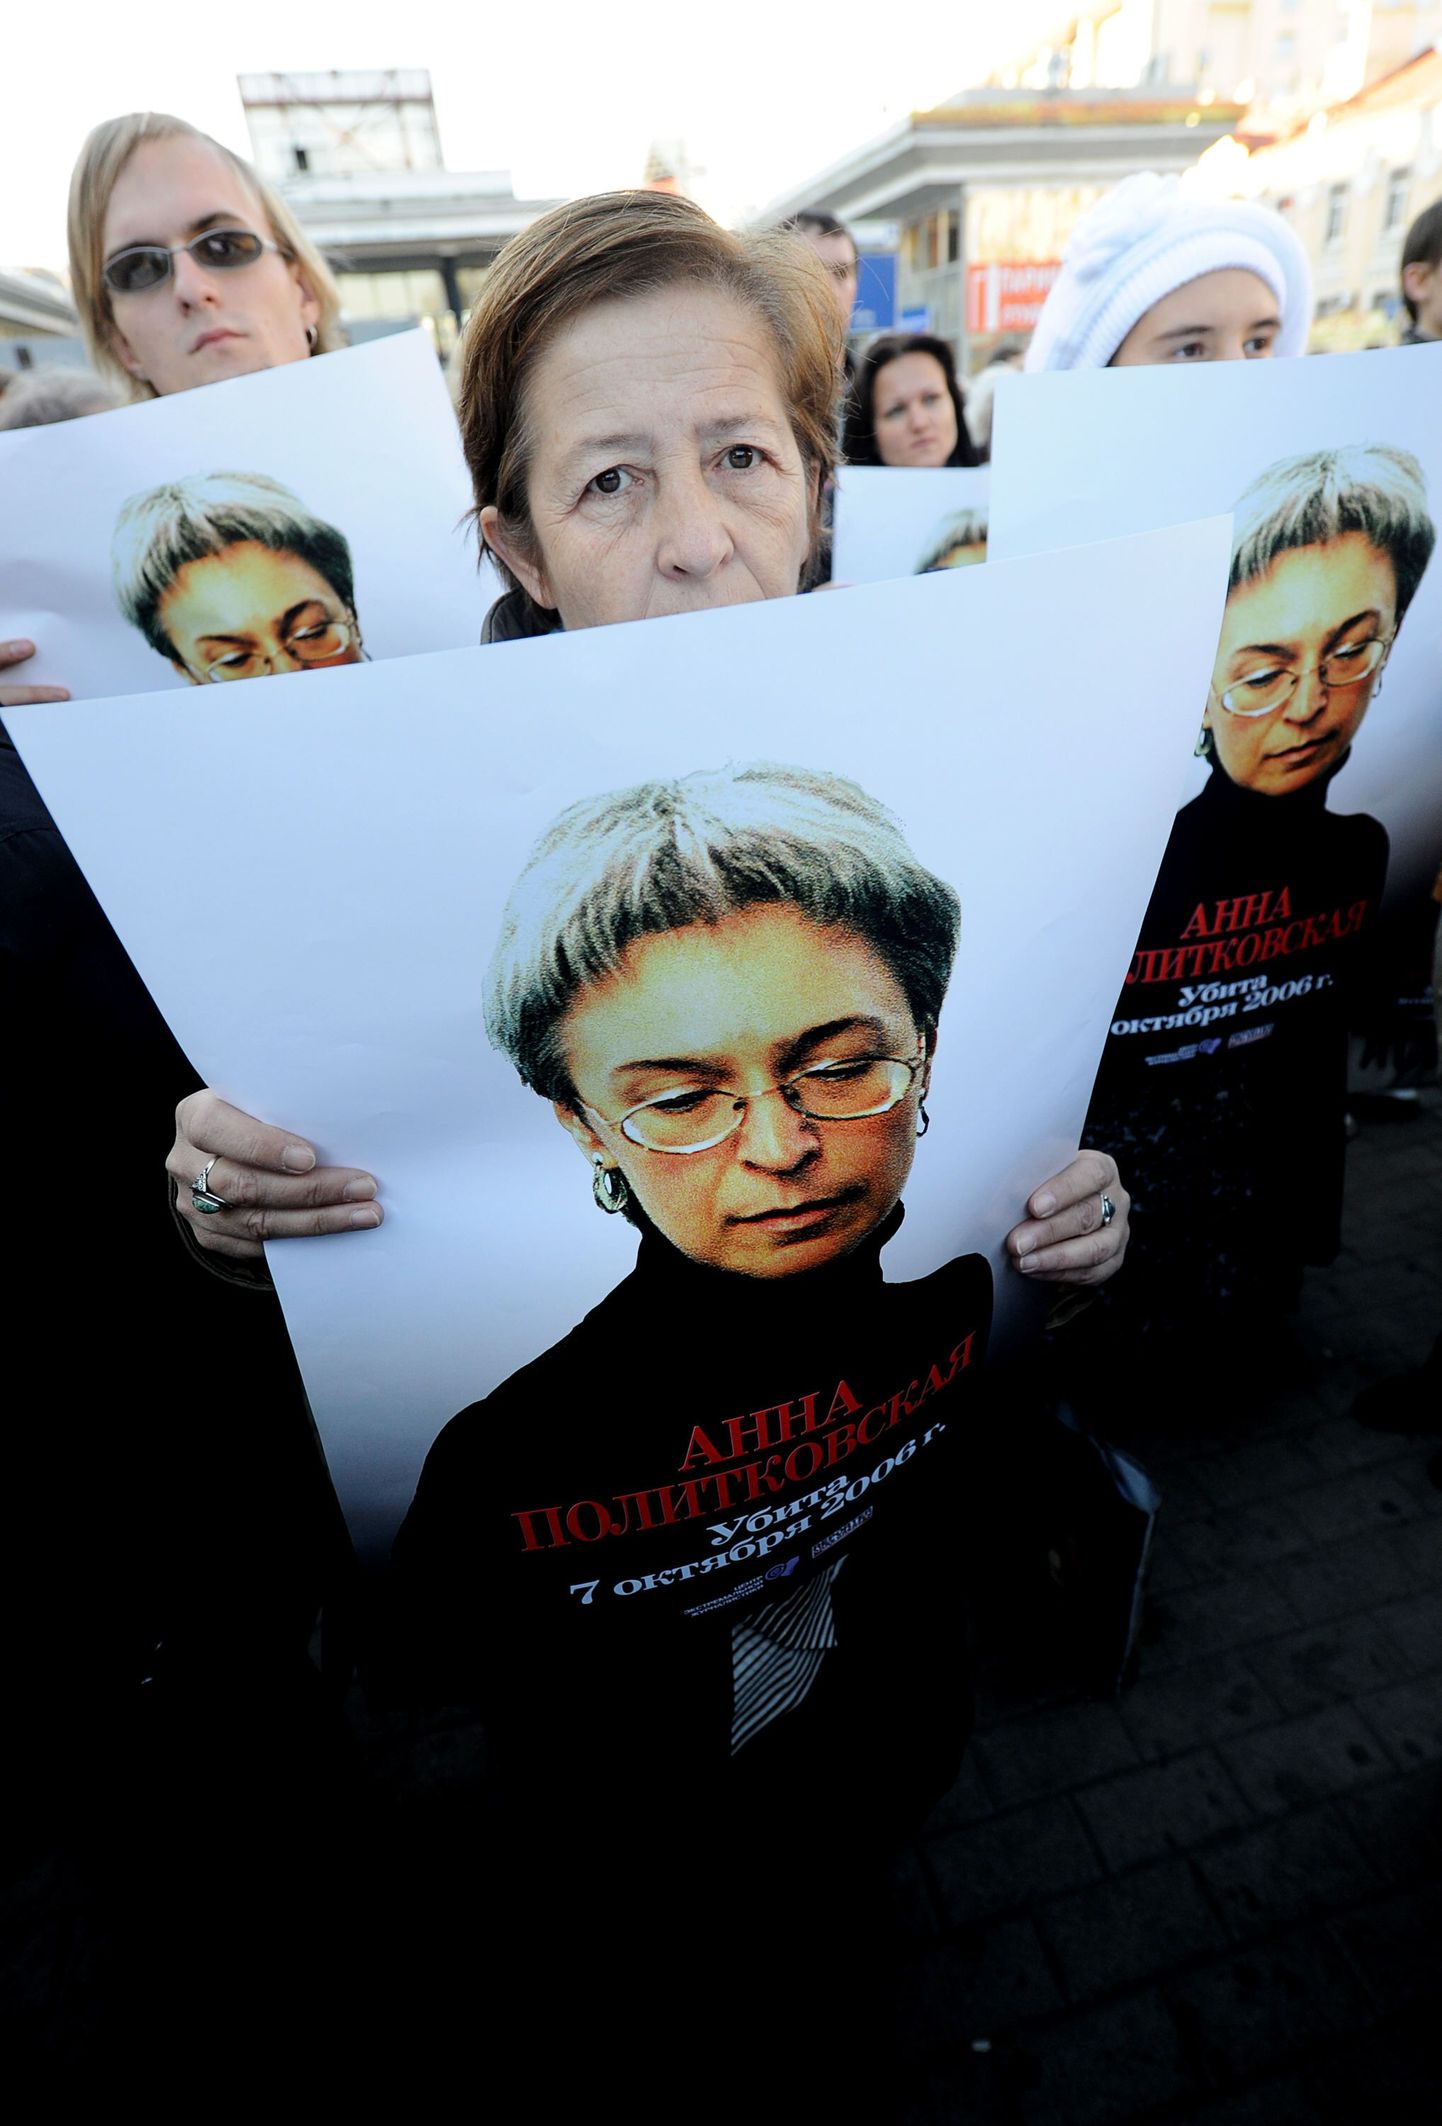 Inimõiguste eest võitlejad Anna Politkovskaja mälestuseks korraldatud üritusel ajakirjaniku piltidega. Foto on tehtud 7. oktoobril 2010 ehk täpselt neli aastat pärast mõrva.